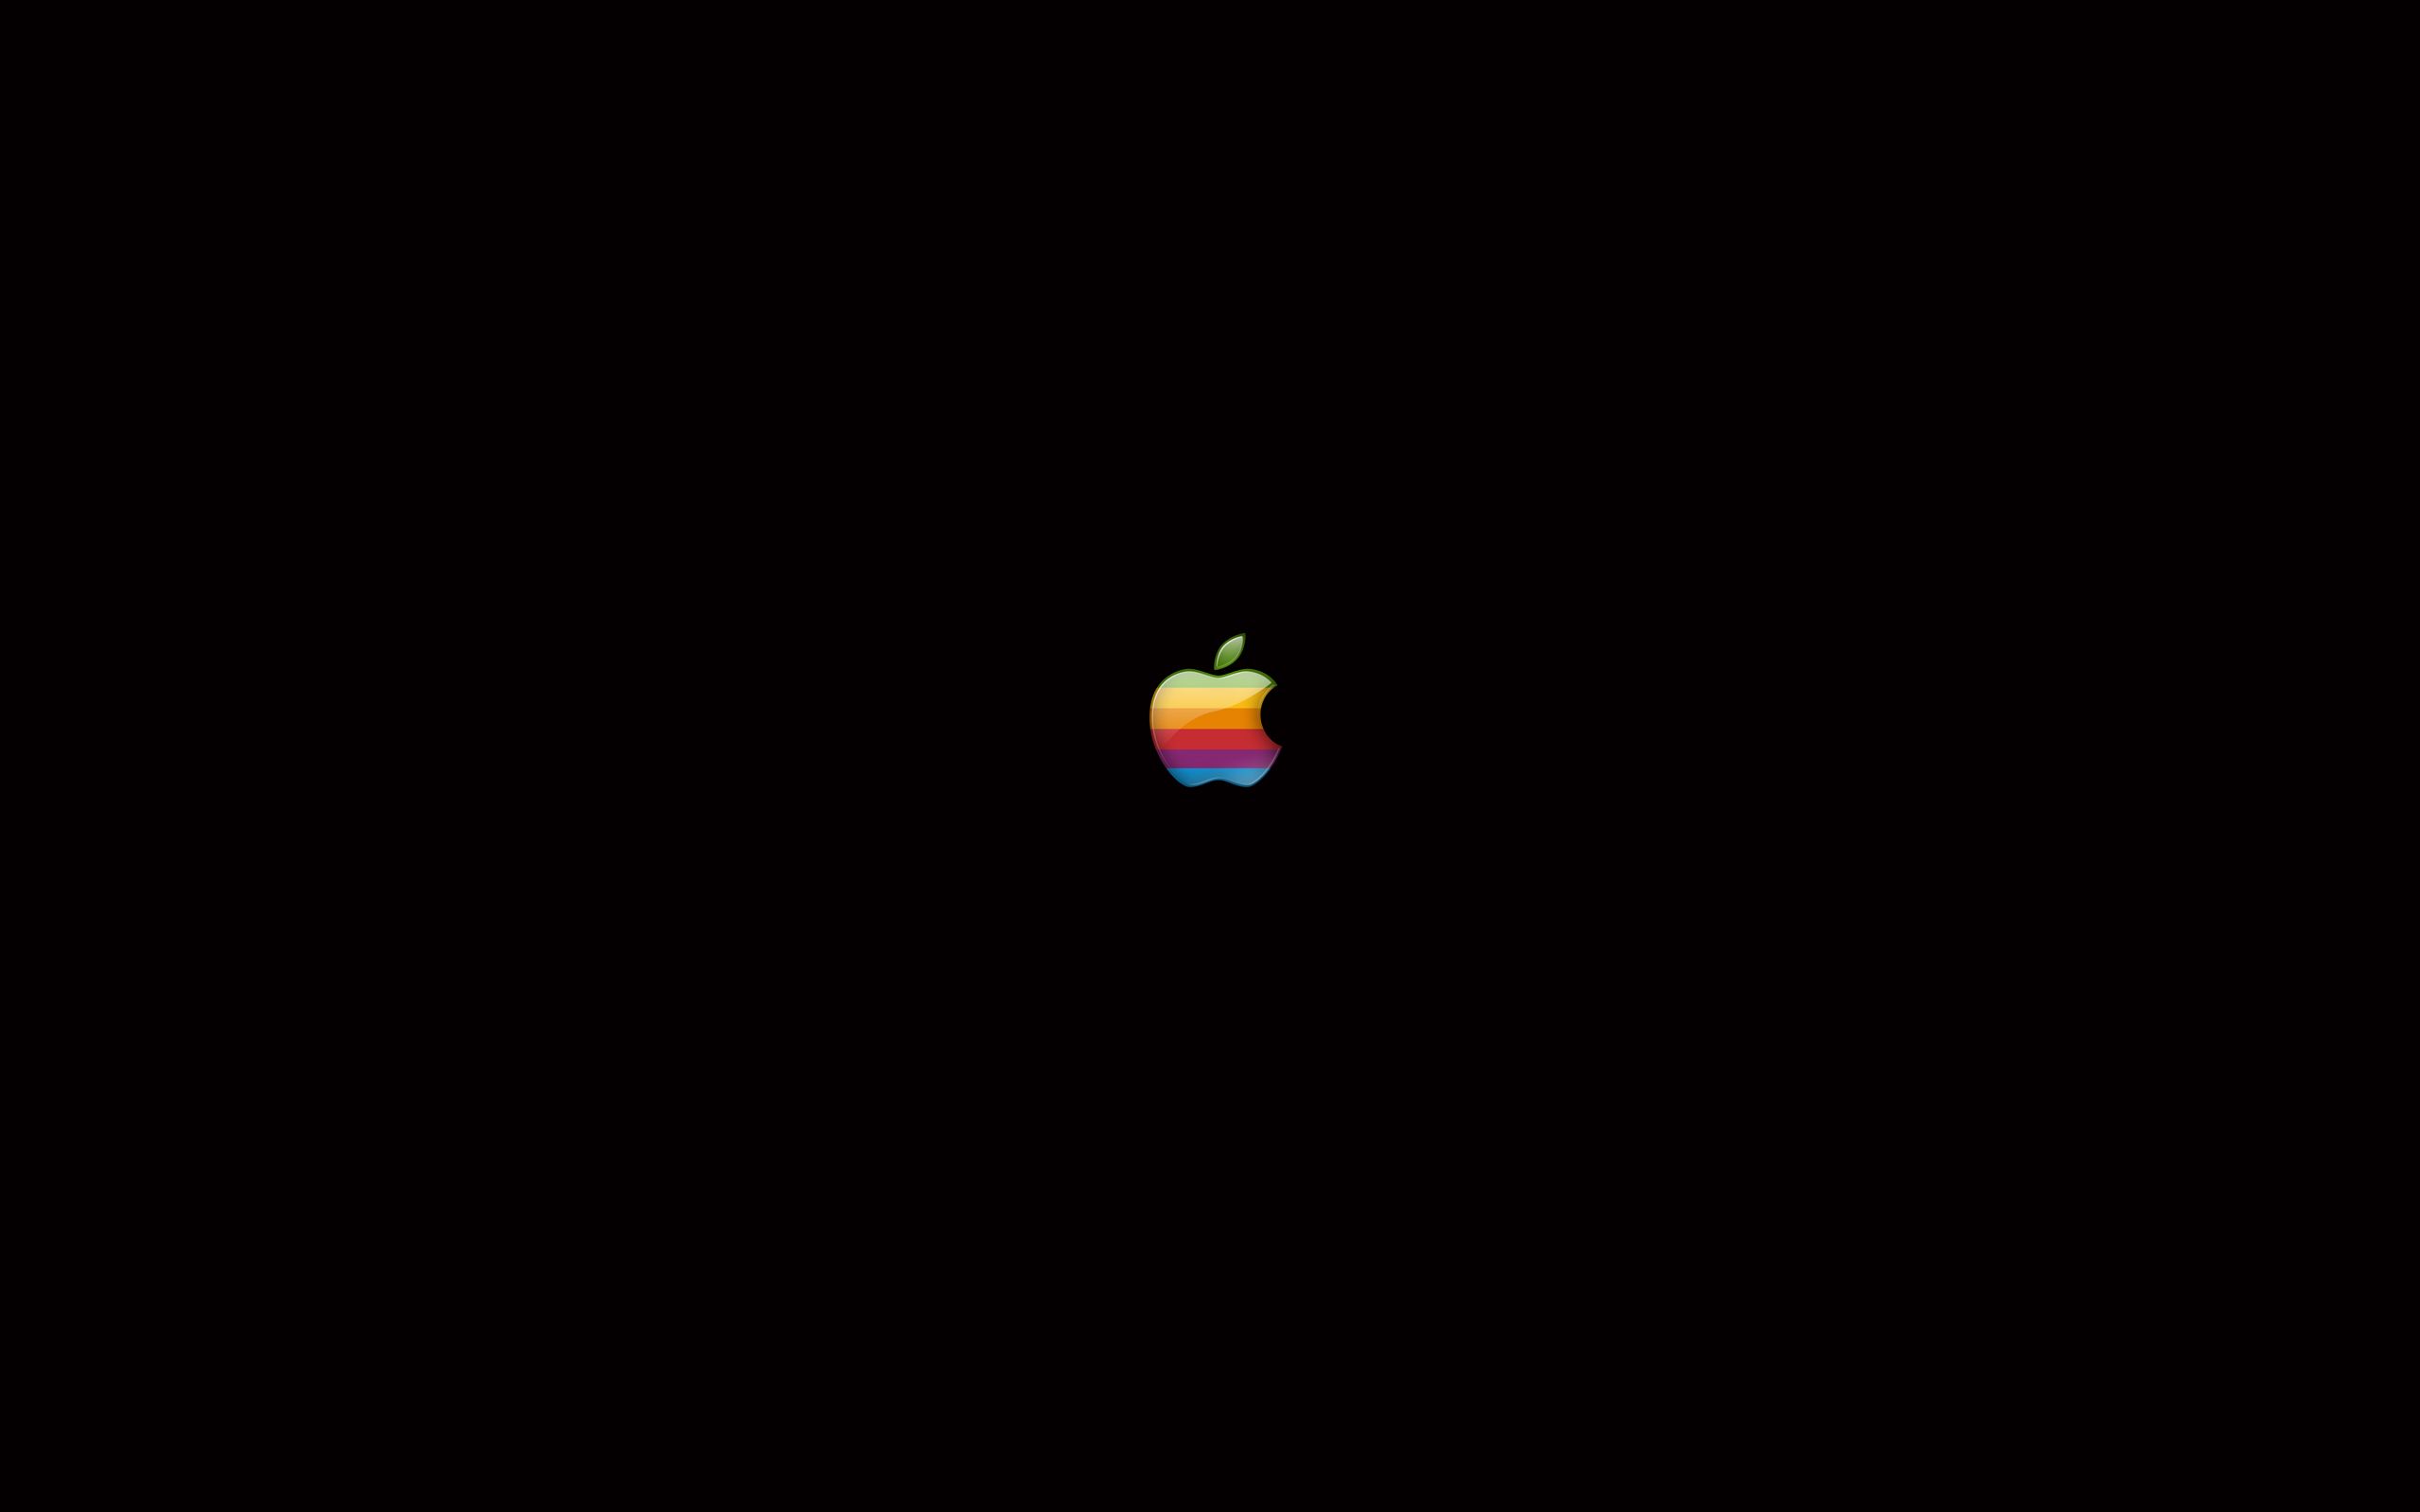 Apple retro logo HD wallpapers | Pxfuel